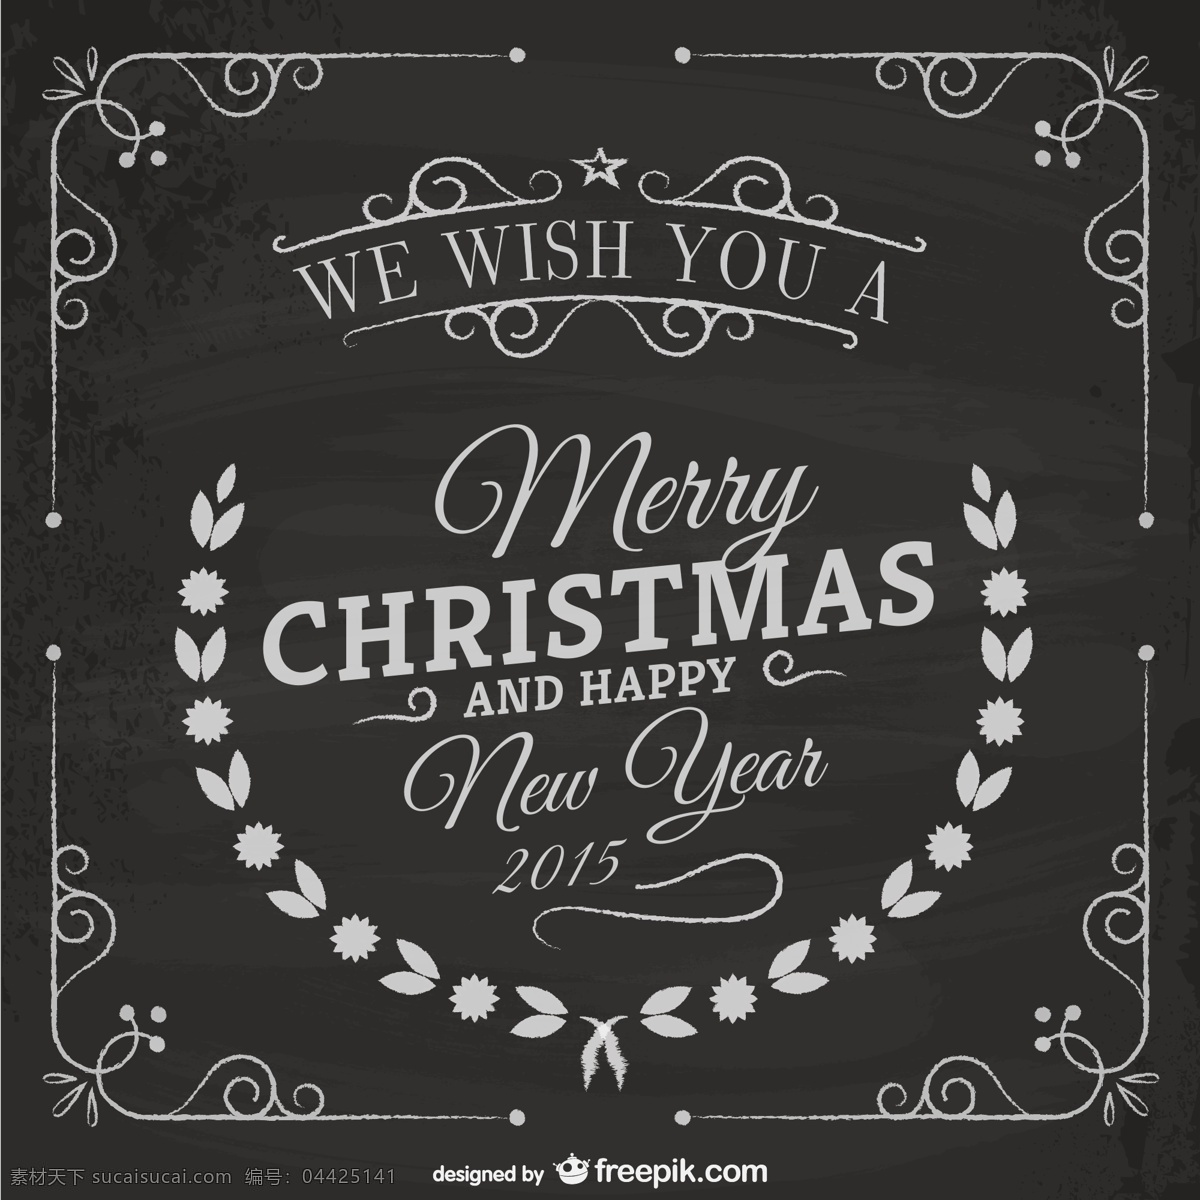 复古 圣诞贺卡 黑板 纹理 葡萄酒 圣诞 边框 快乐 新一年 快活 圣诞节 新卡 年份 边境 矢量